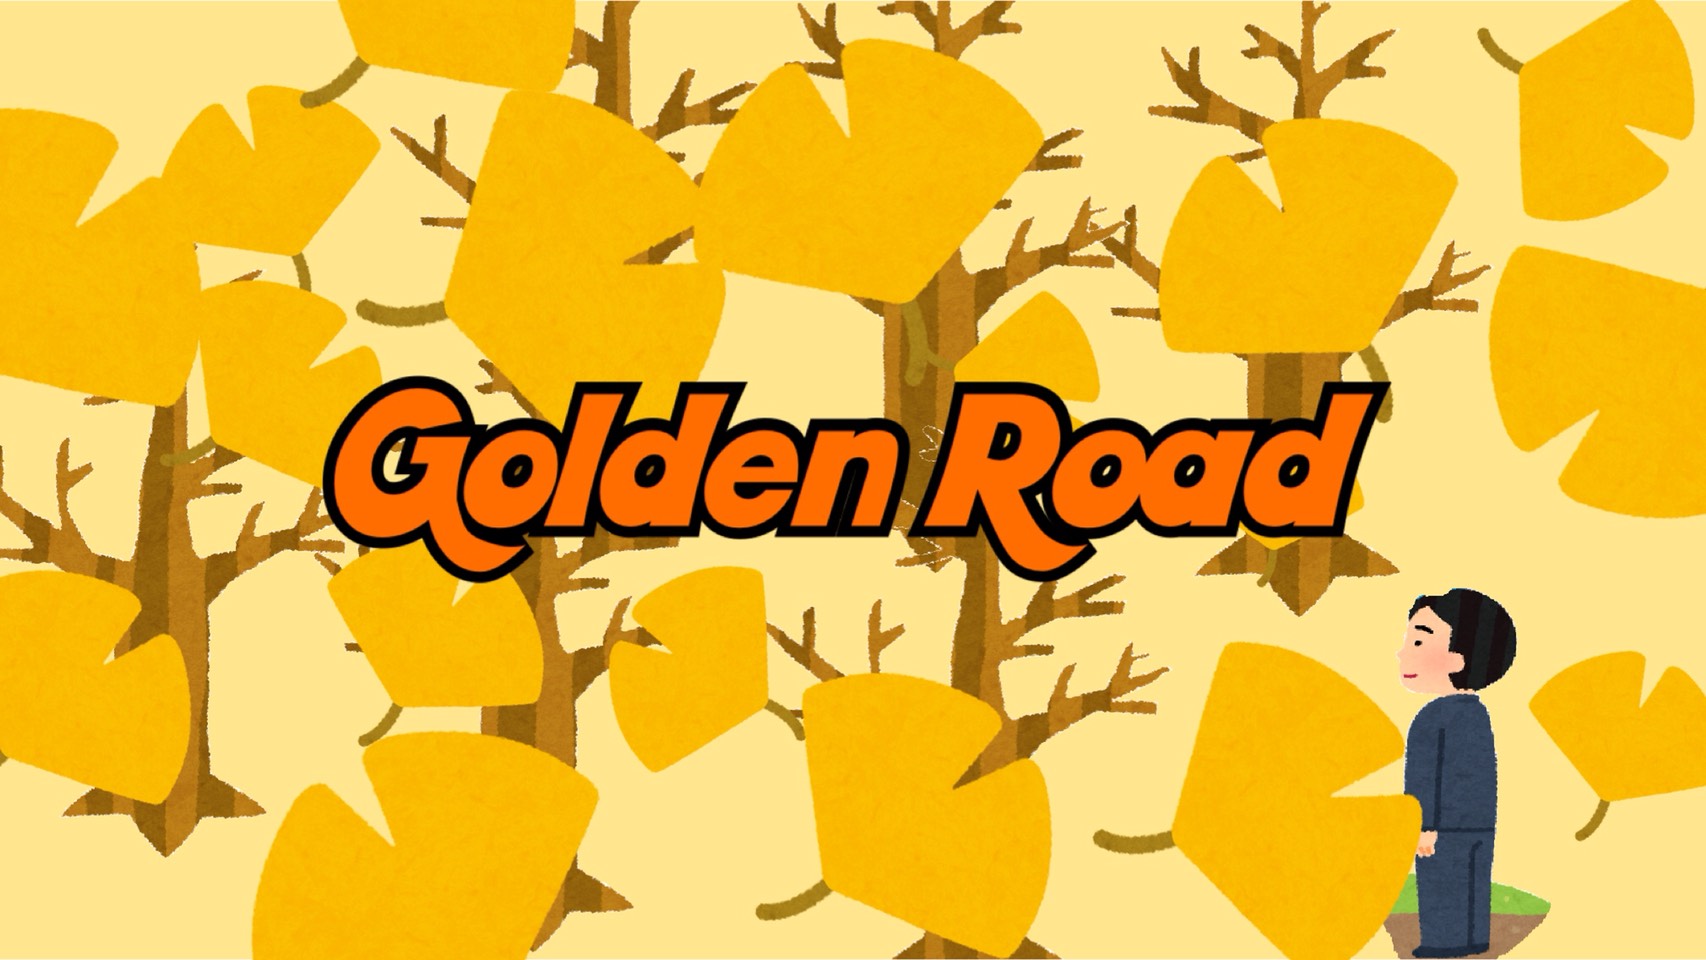 「Golden Road」のイメージ